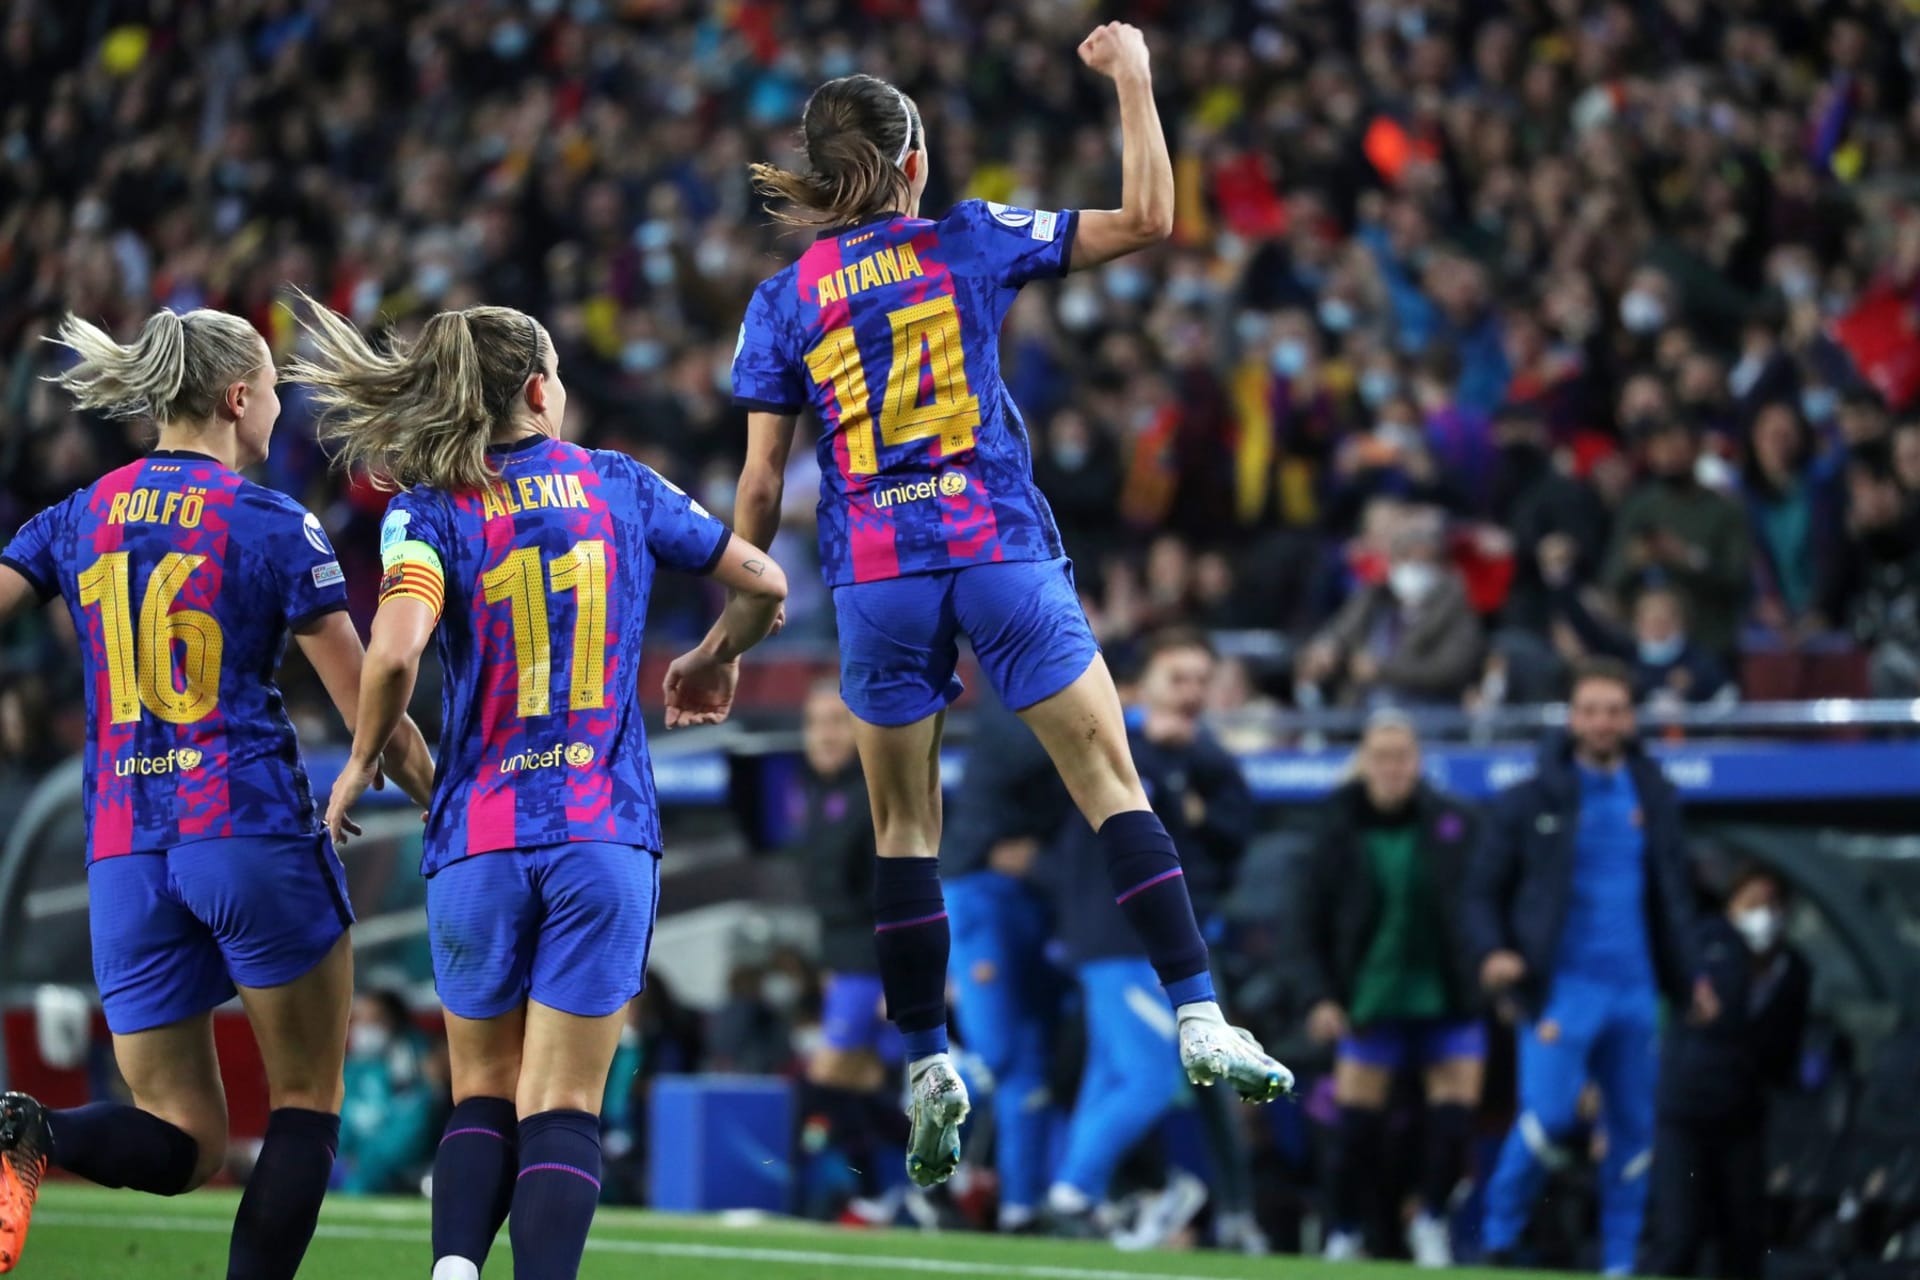 Zápas ženských týmů FC Barcelona – Real Madrid sledovalo na konci března letošního roku 91 553 diváků, kteří zcela vyčerpali kapacitu barcelonského stánku Camp Nou.